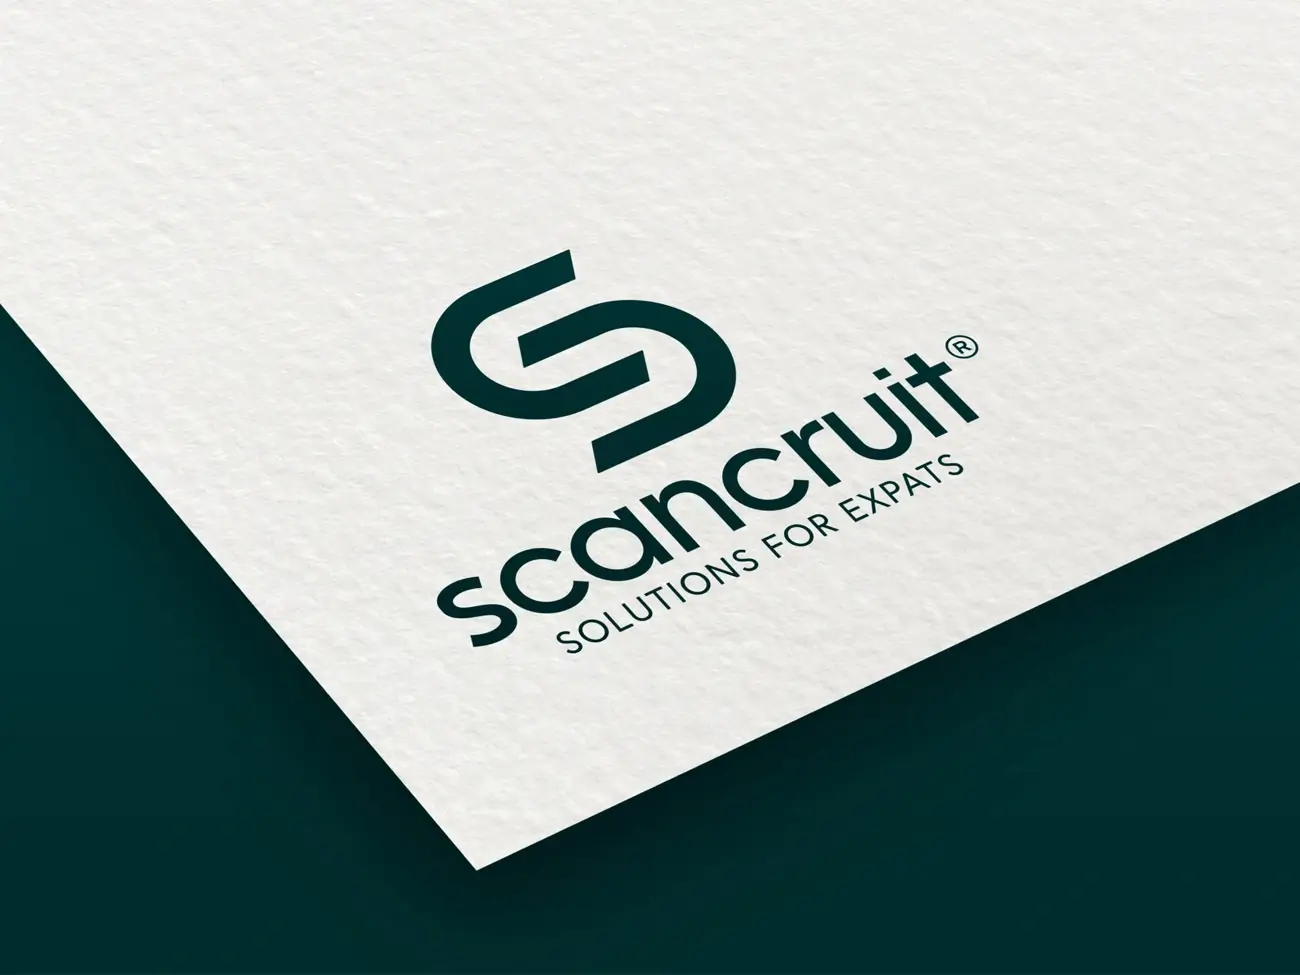 Firmalogo designet til Scancruit rekruttering